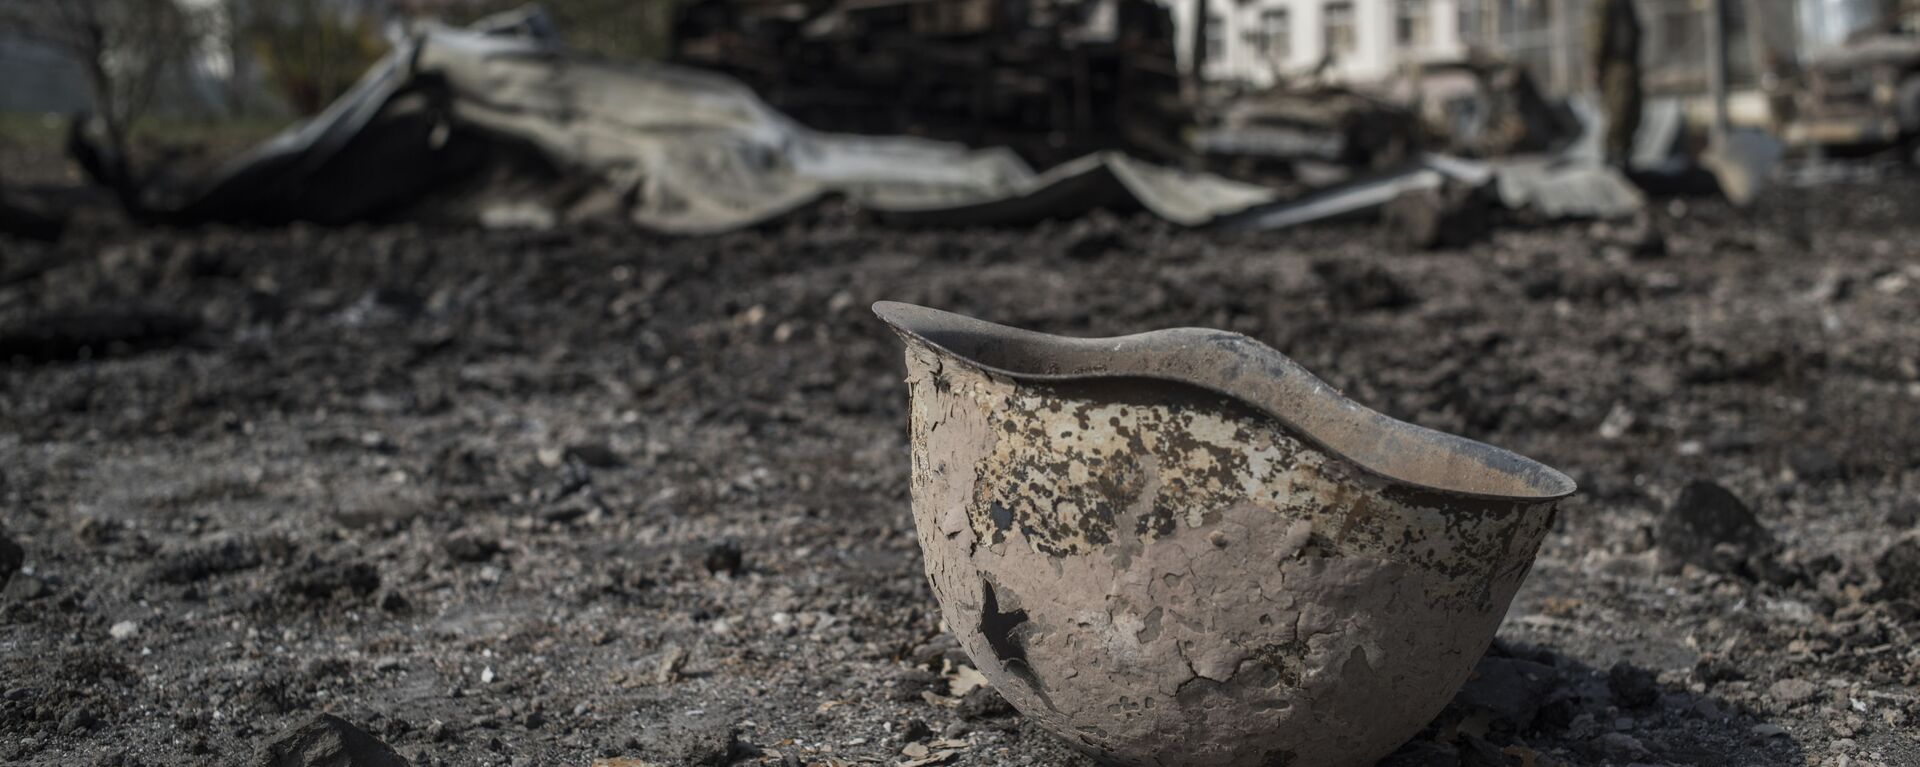 Пробитая каска на территории у госпиталя в Мартакерте, разрушенного в результате обстрела. - Sputnik Արմենիա, 1920, 22.02.2021